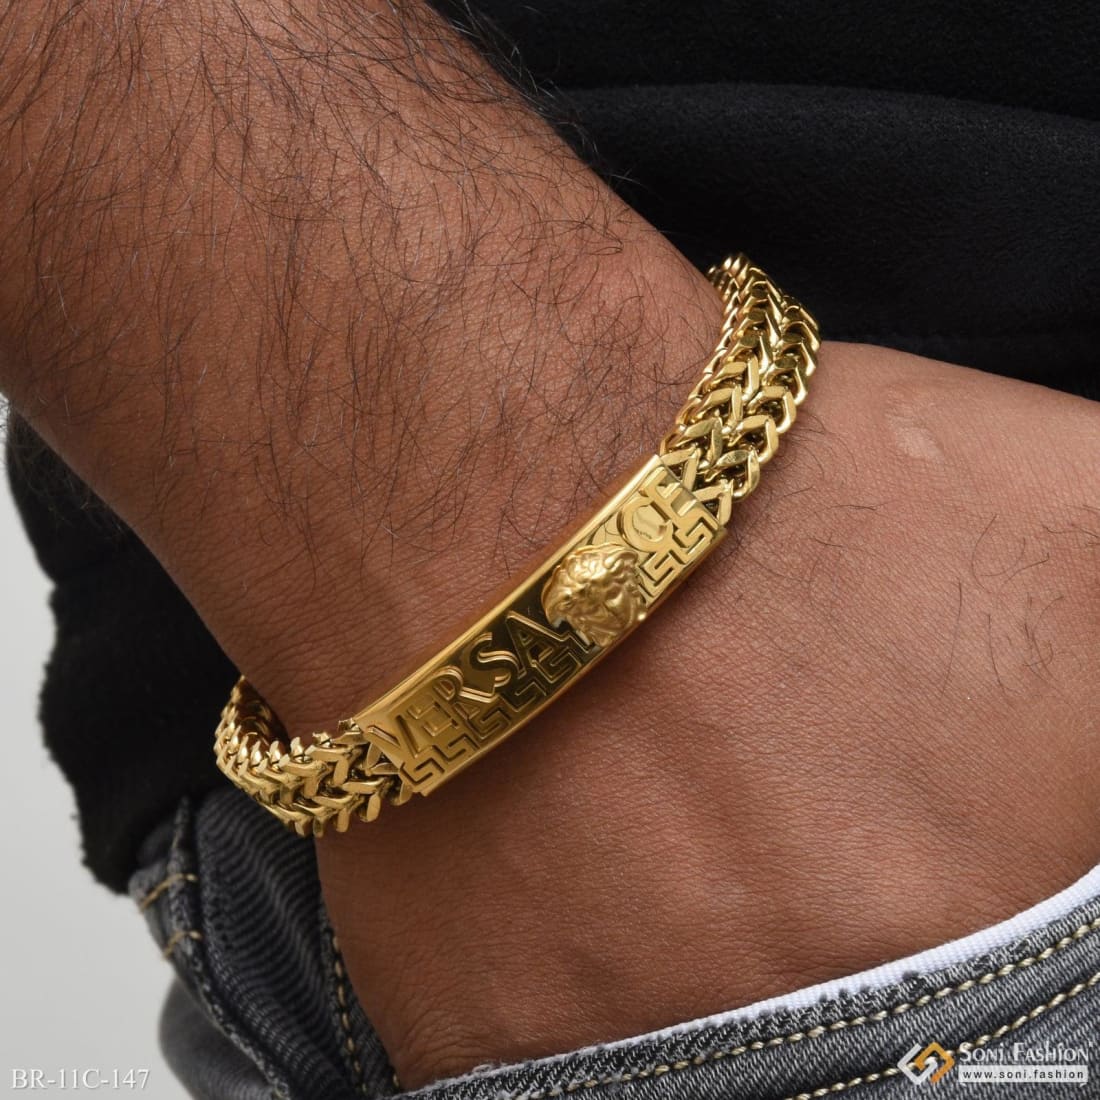 Bracelet for men in 22 carat gold by Purejewels